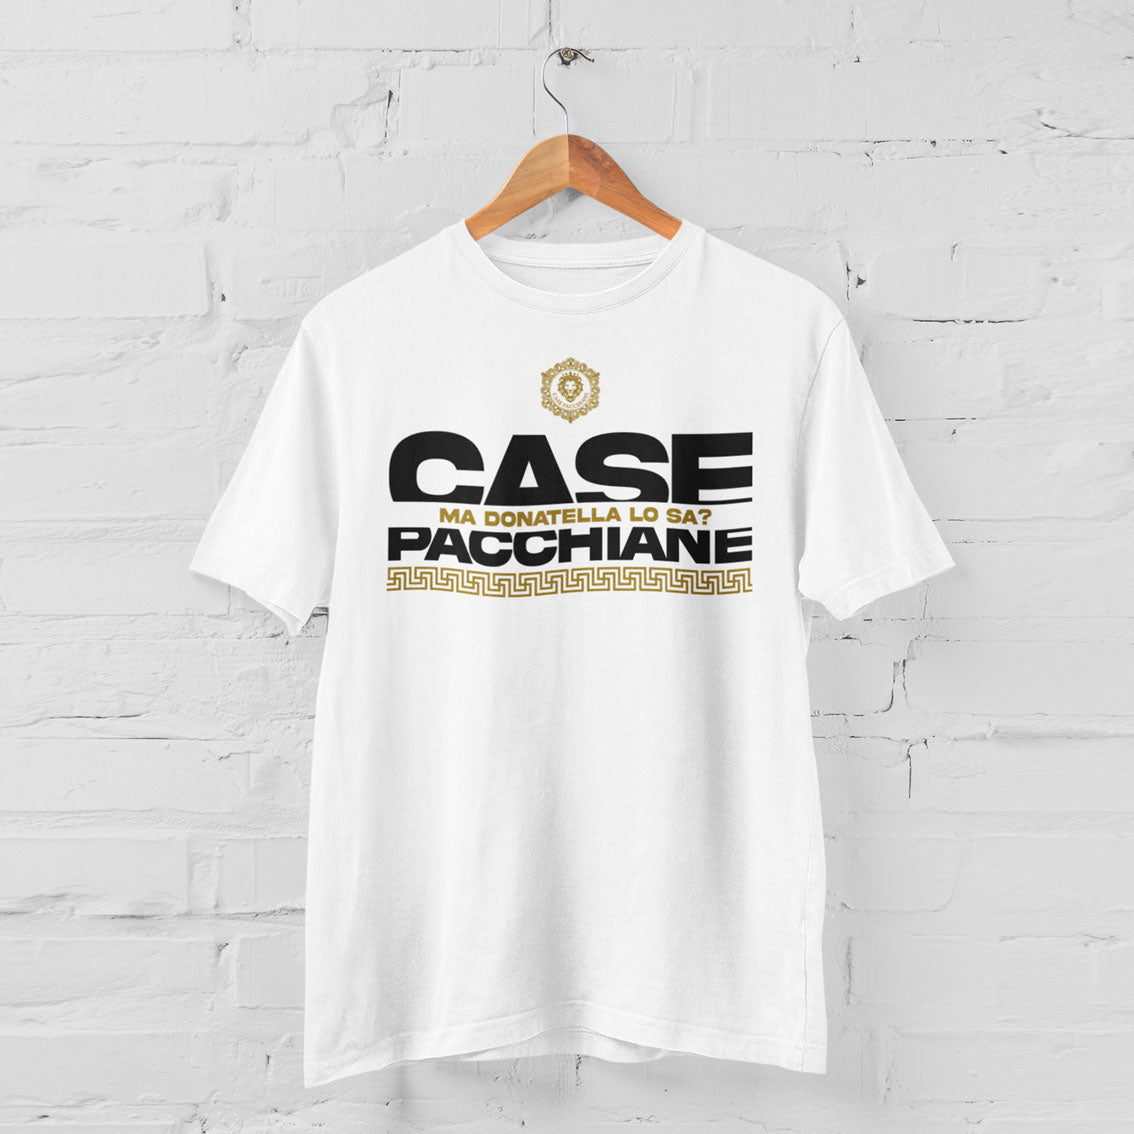 Official Case Pacchiane "Donatella" T-shirt